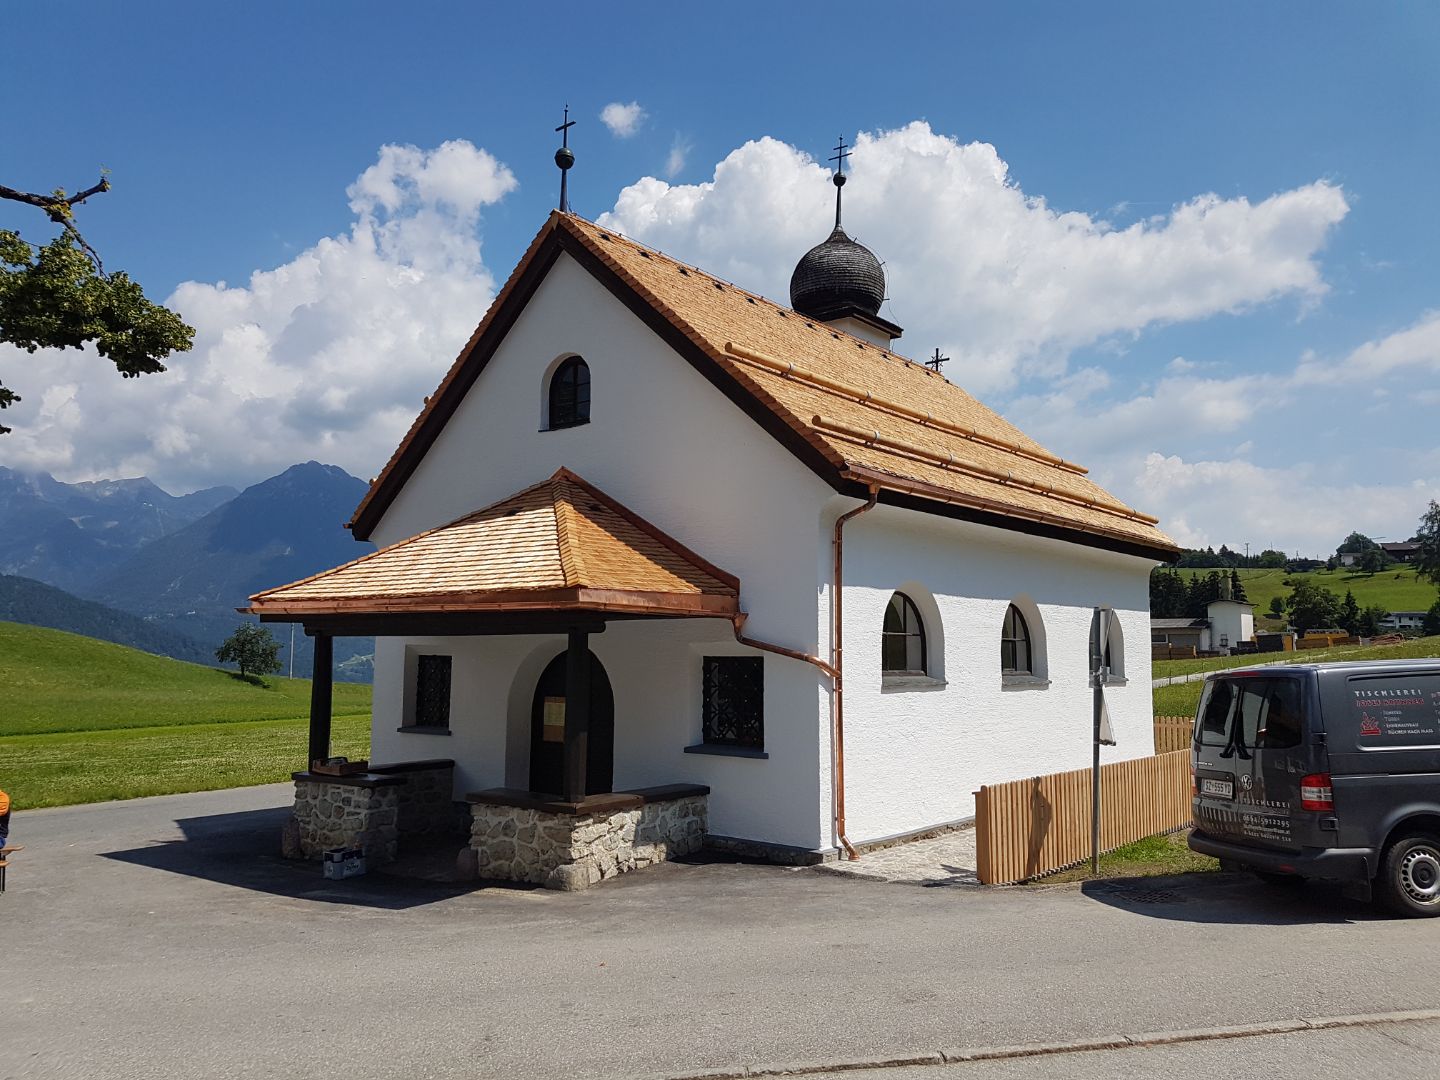 Holzschindeln von Holzbau Brunner auf der Kirche von Gallzein